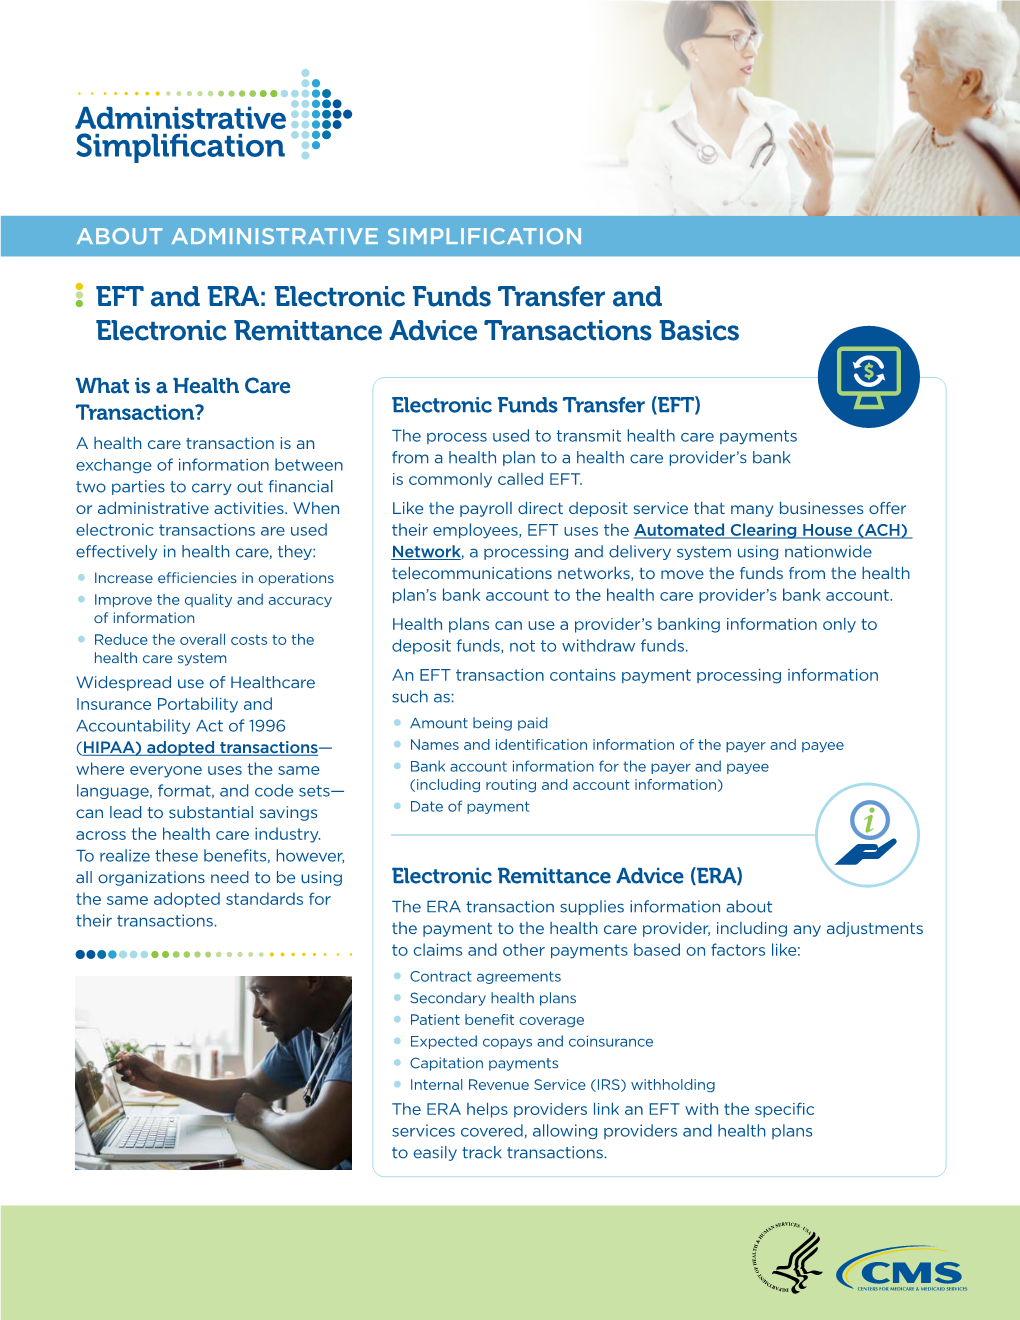 EFT) and Electronic Remittance Advice (ERA